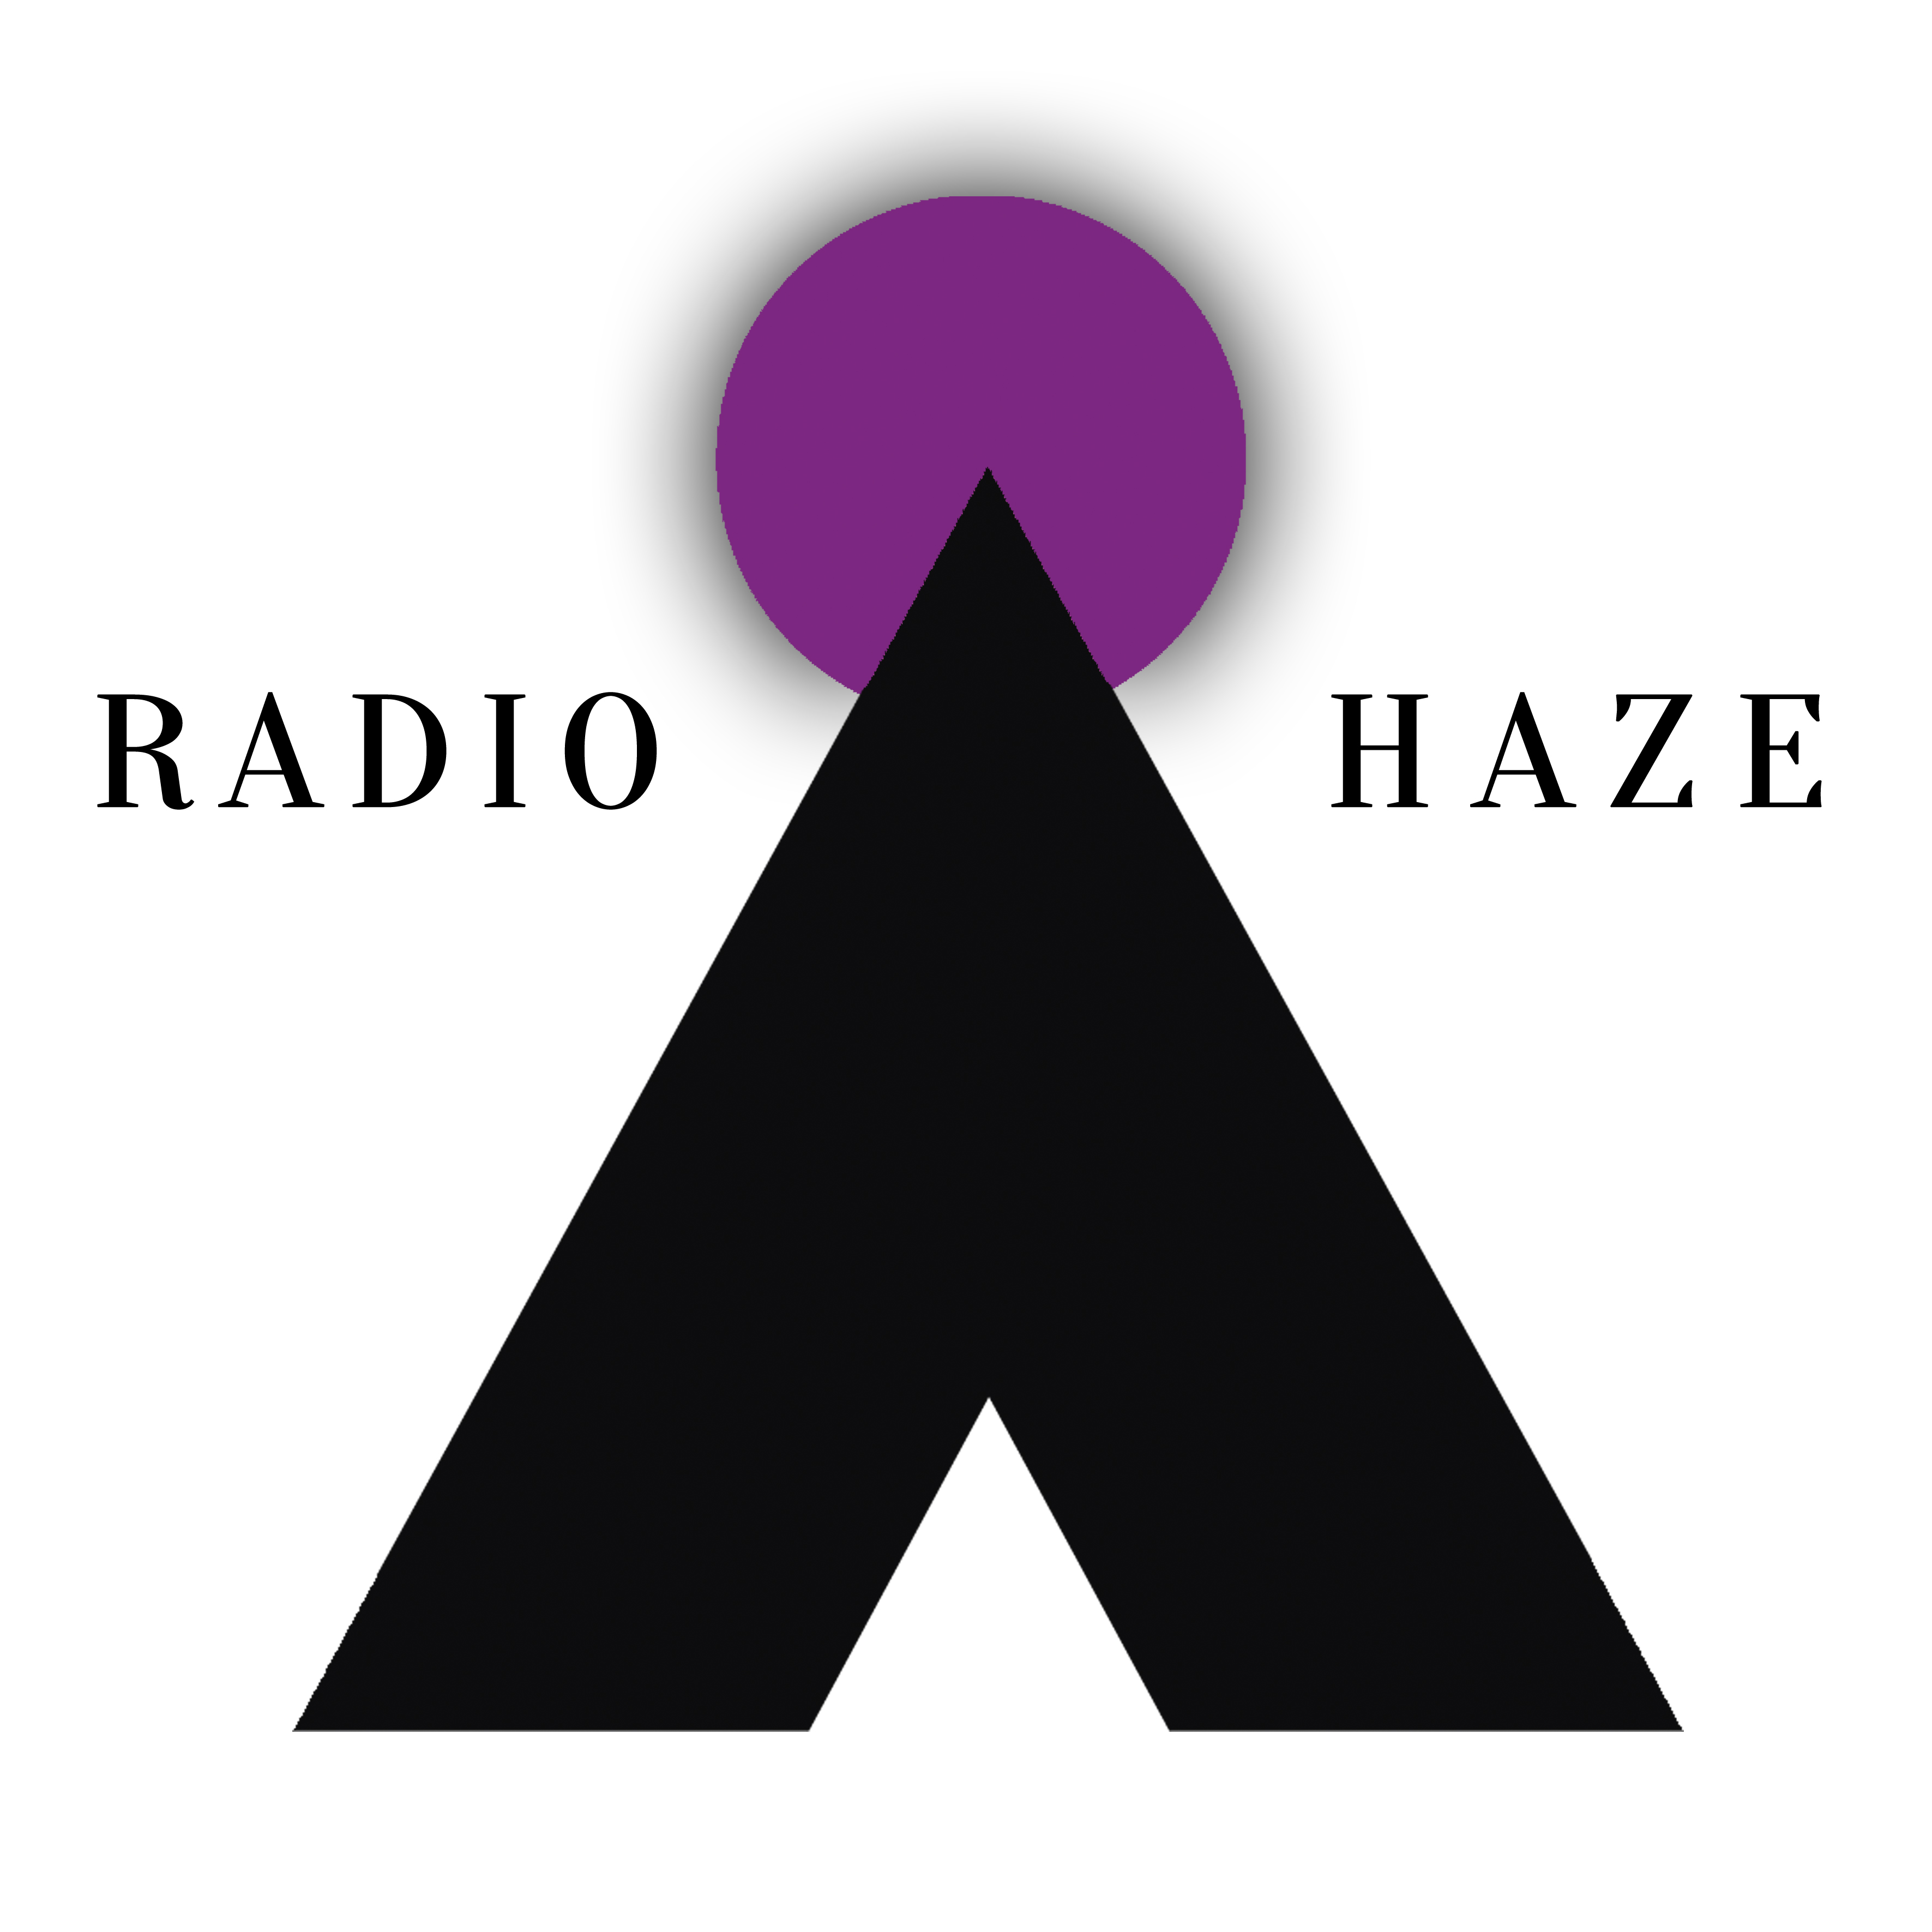 (c) Radiohaze.com